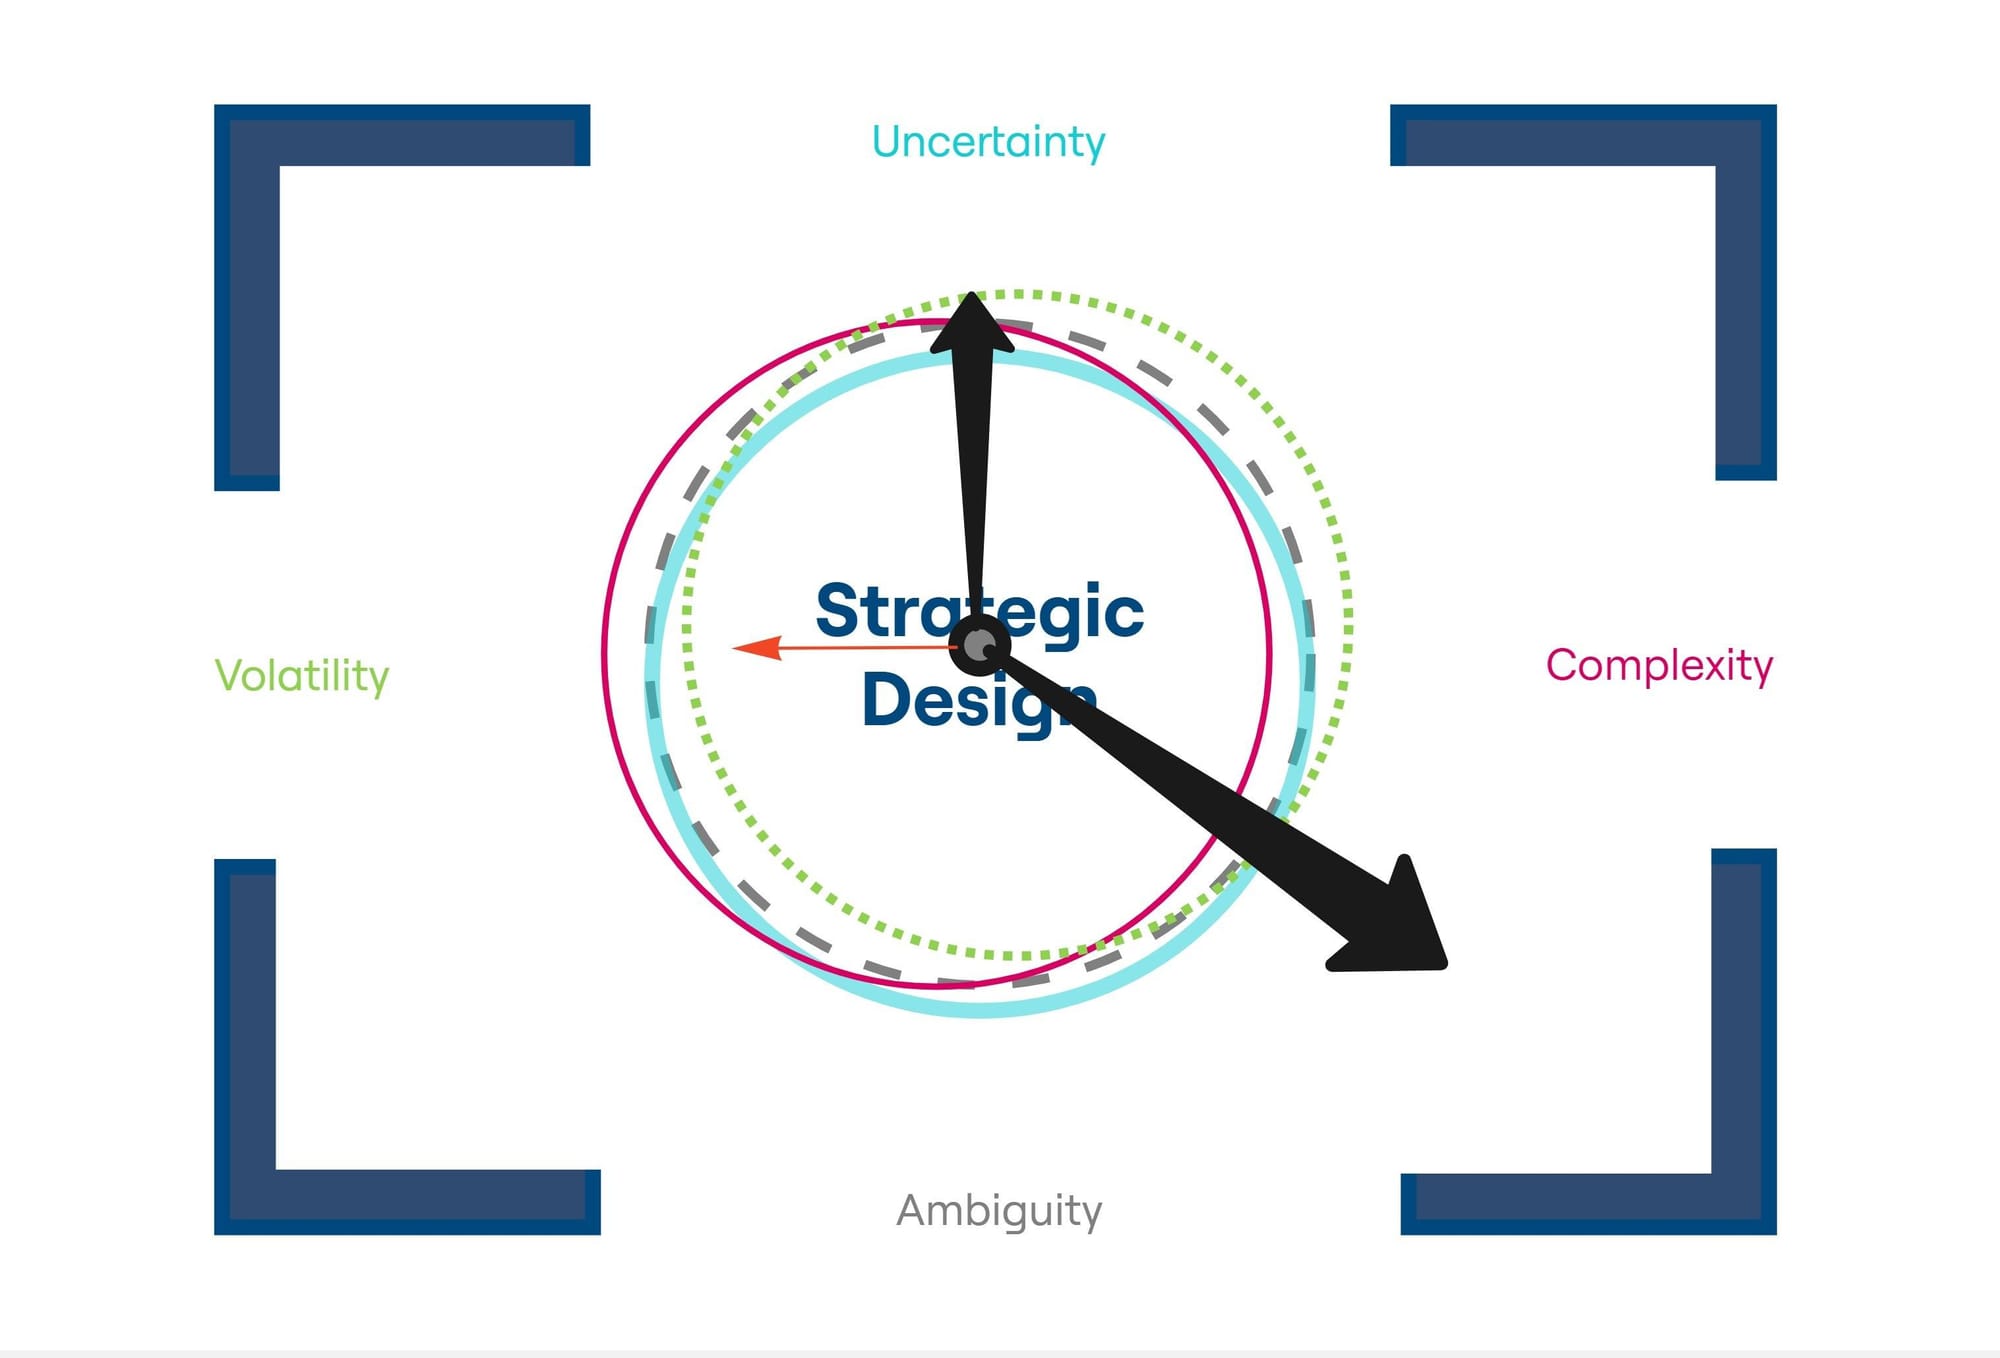 Strategic Design in VUCA quadrant